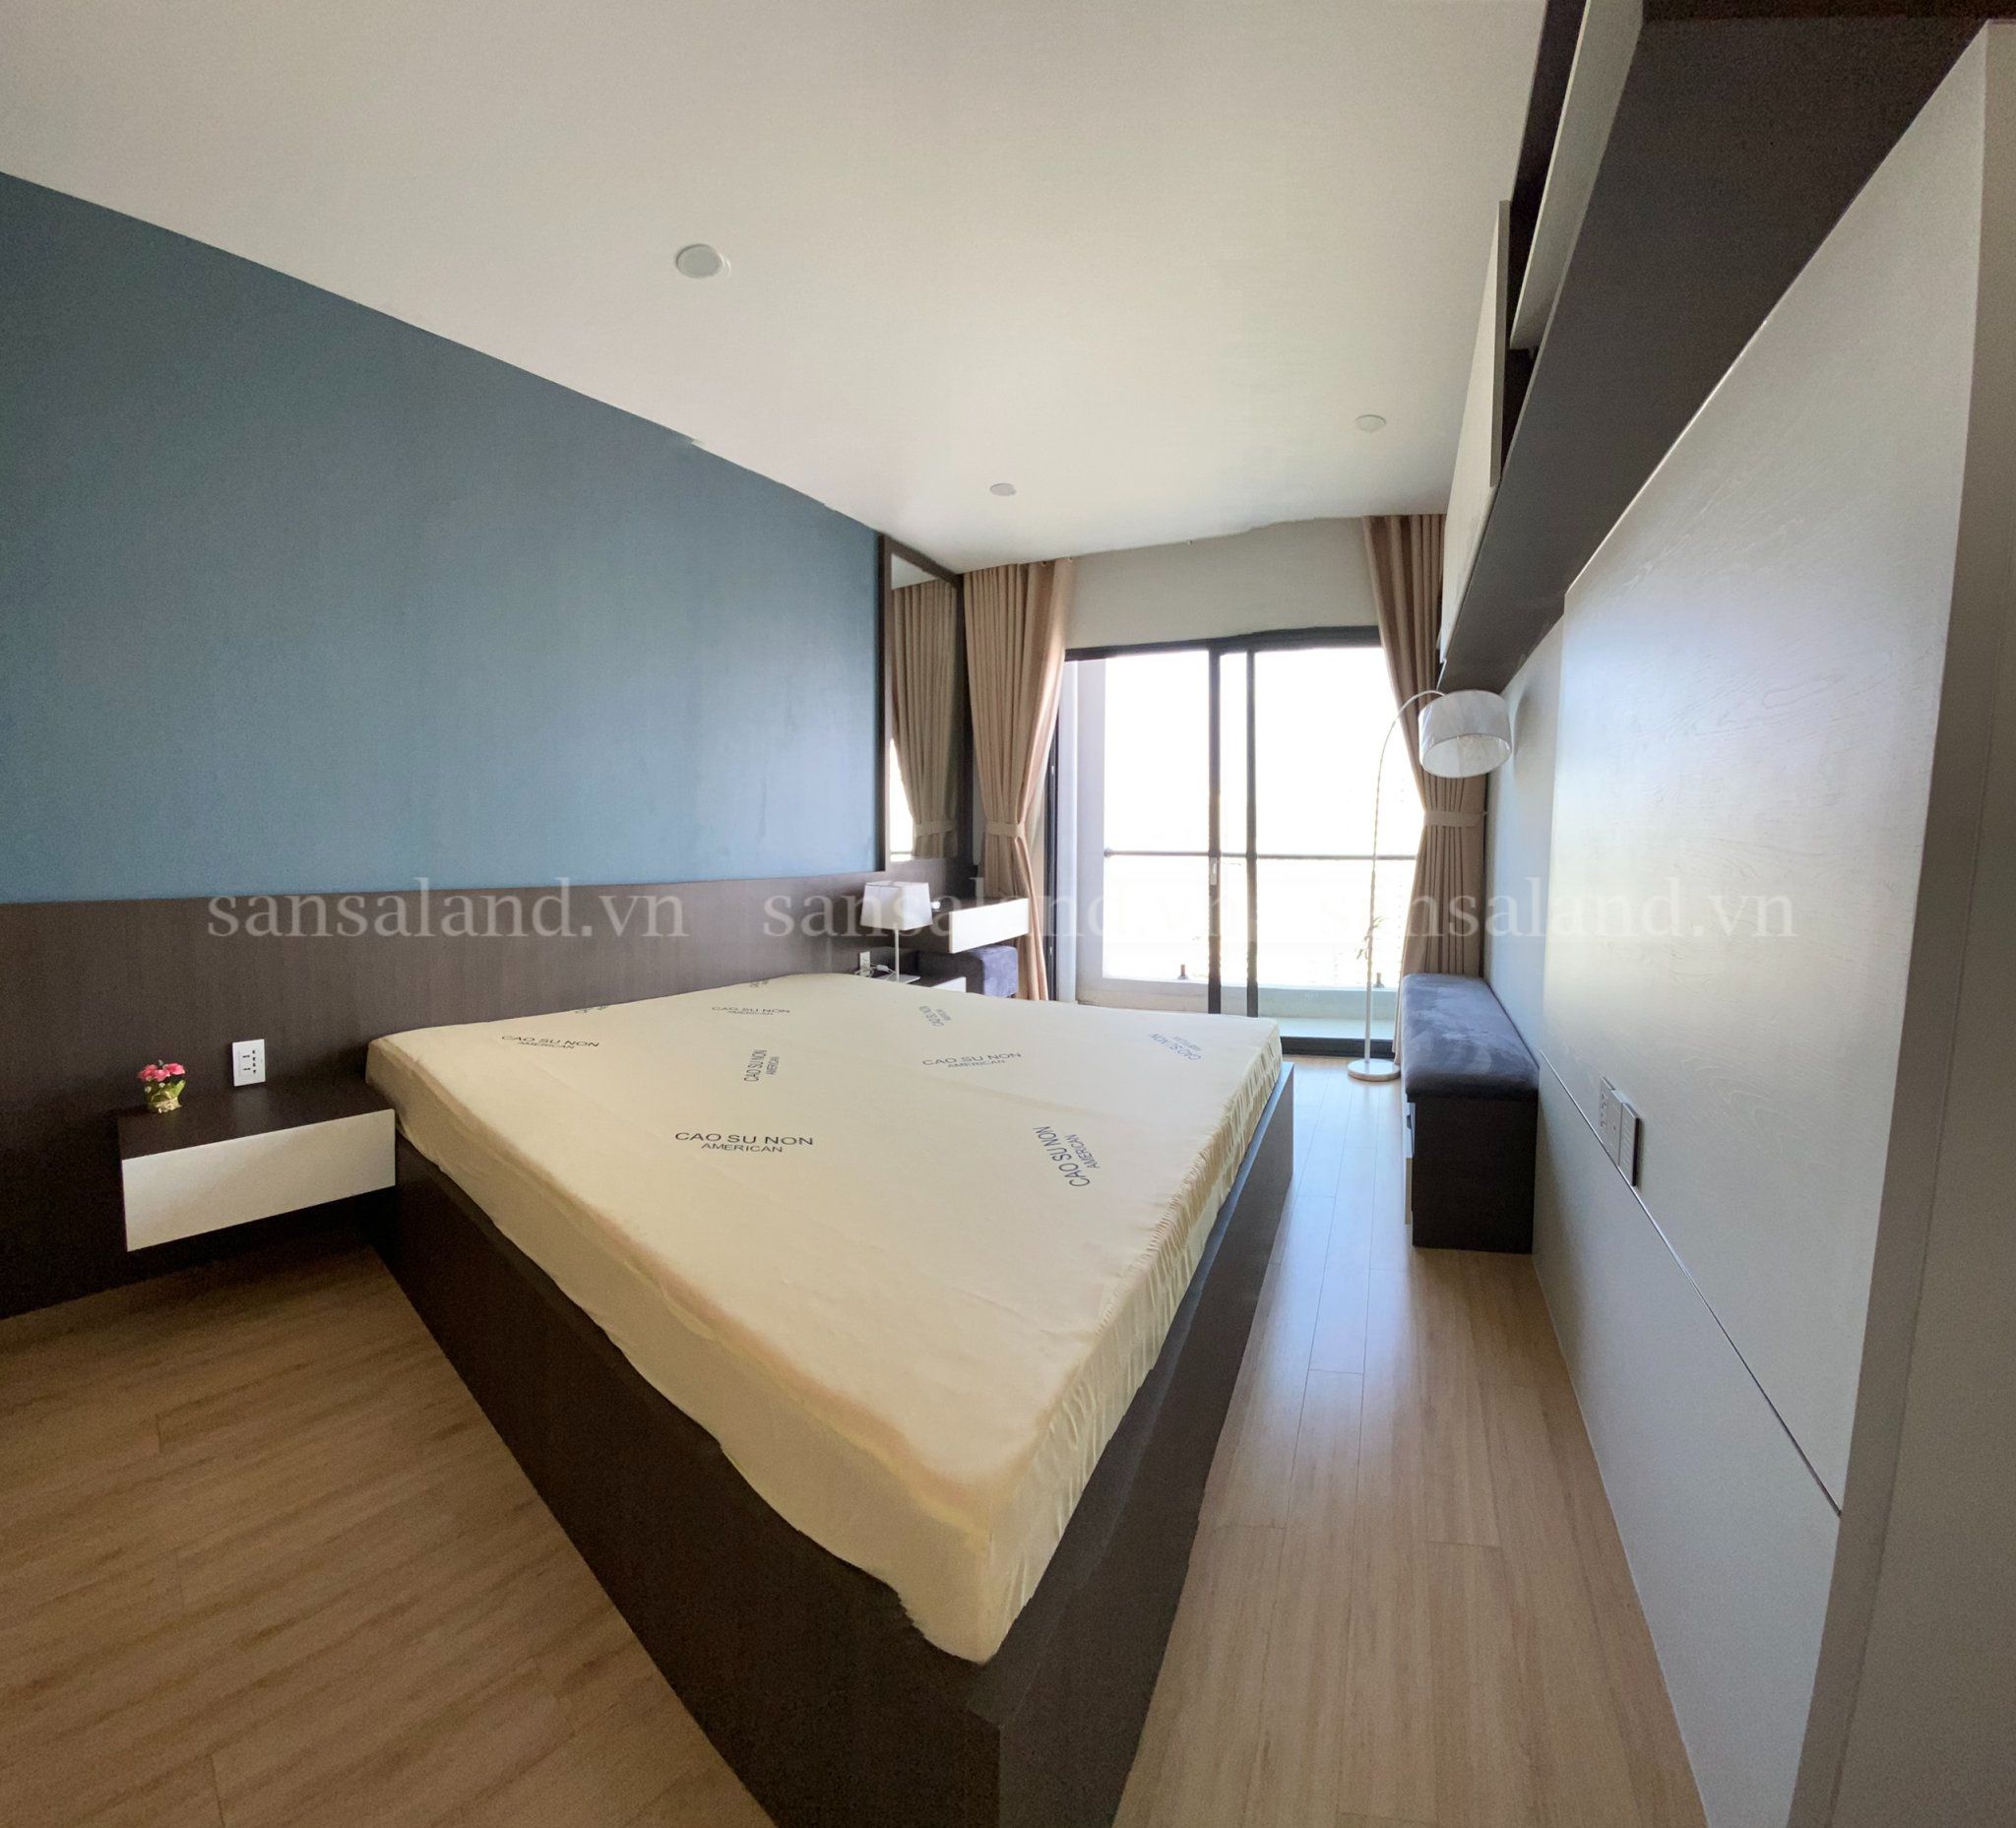 Cho thuê căn hộ New City 3 phòng ngủ, tầng 20, 116 m2 nội thất đẹp